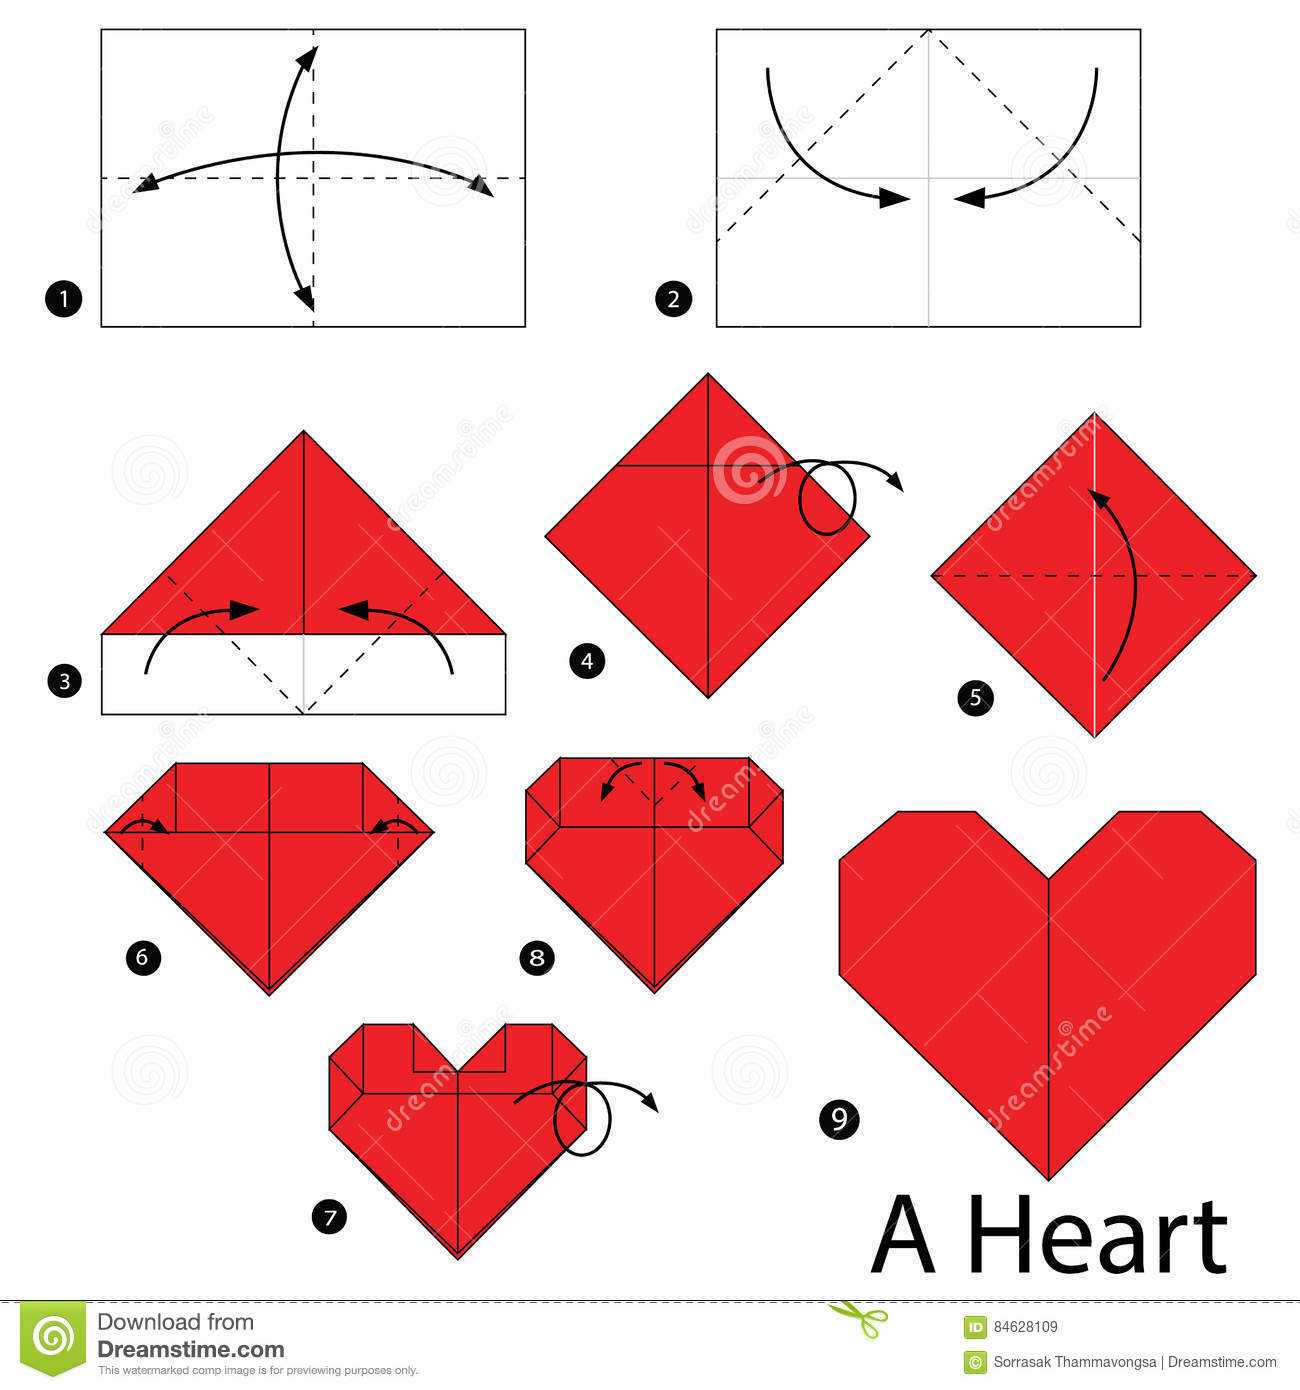 Объемные сердечки из бумаги: как сделать сердечко своими руками - пошагово и поэтапно разберем как сложить сердечко из салфетки и из гофрированной бумаги - легкие, пышные и объемные сердечки